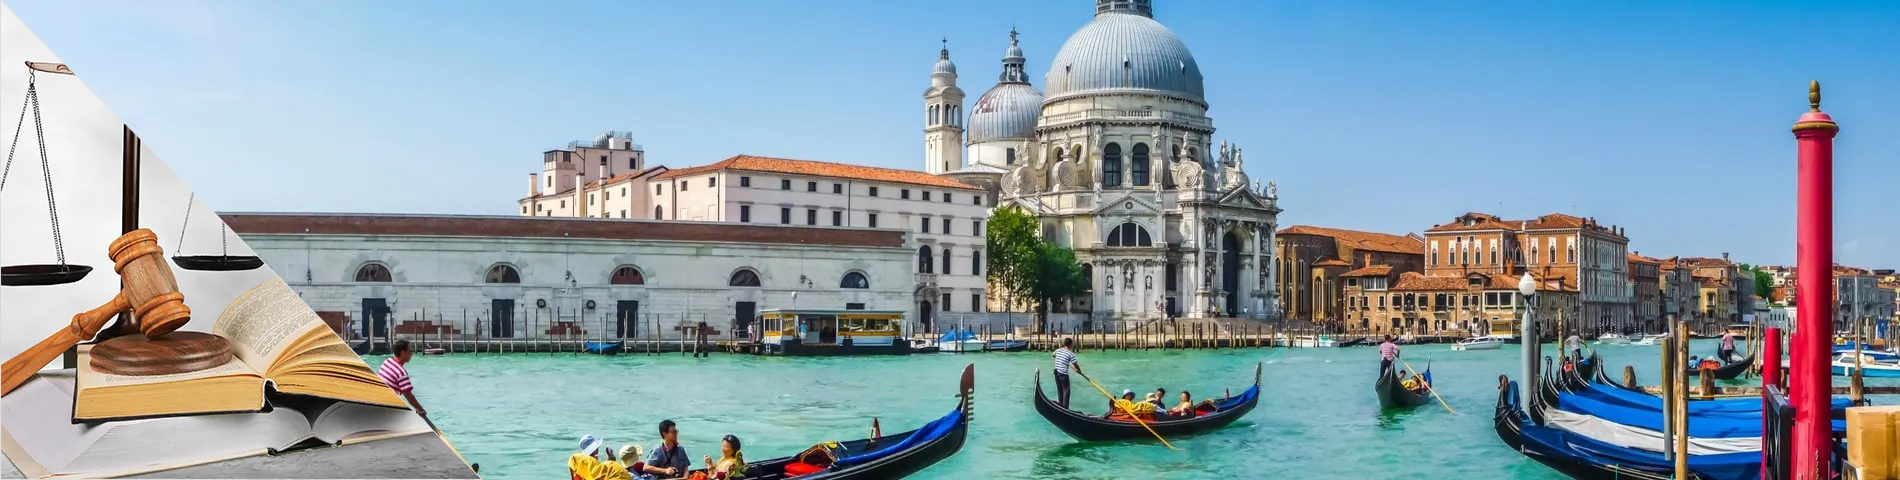 Wenecja - Włoski dla Prawników